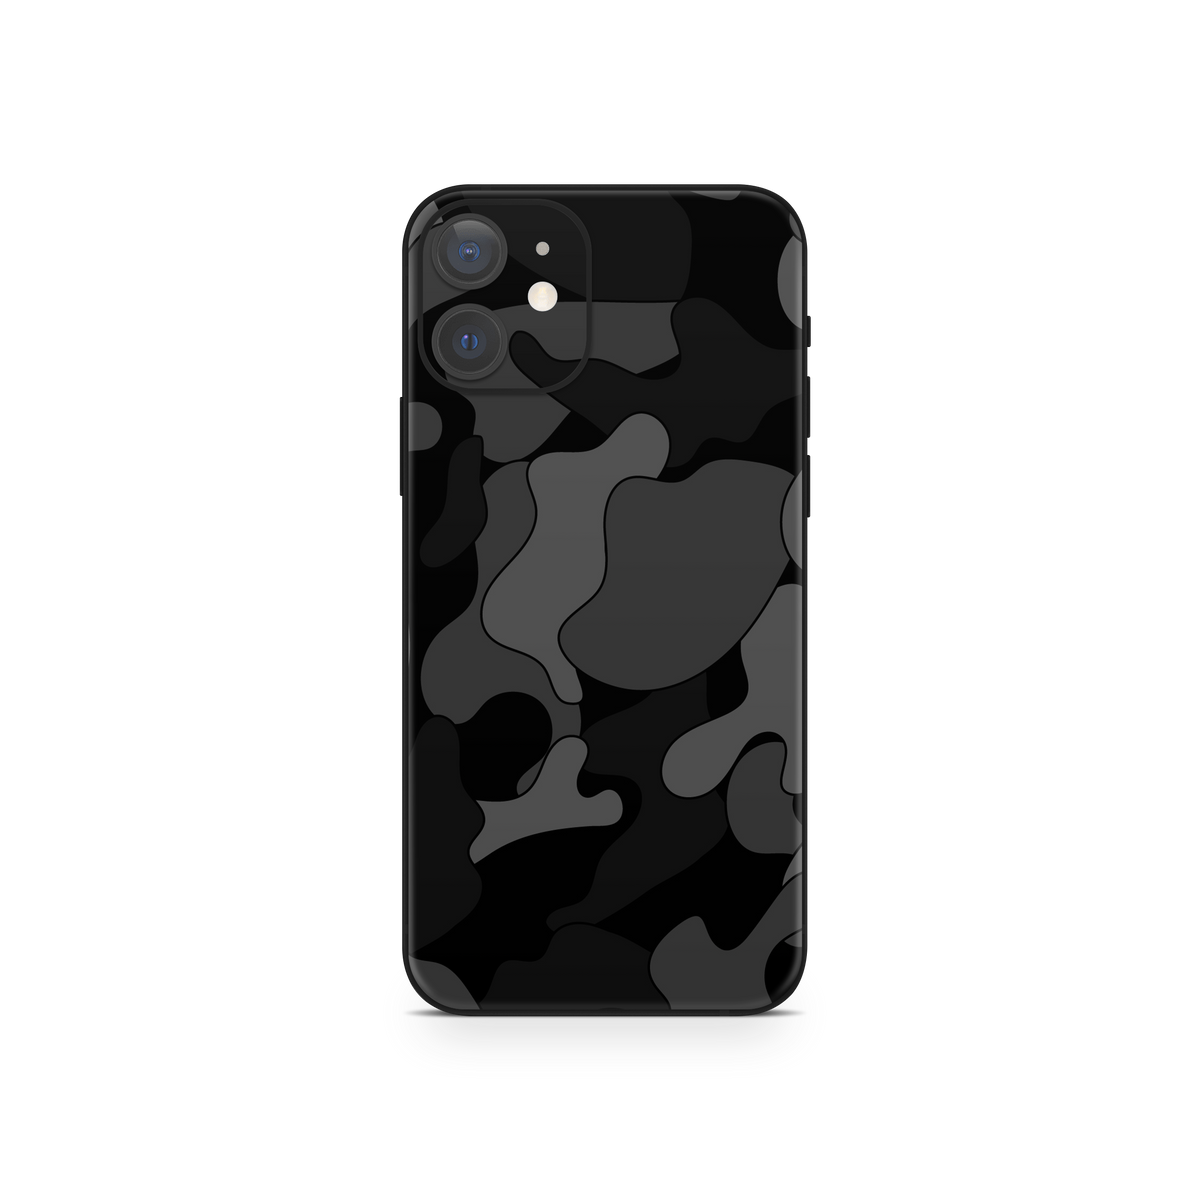 Apple iPhone 12 Ape Black Camo Skin